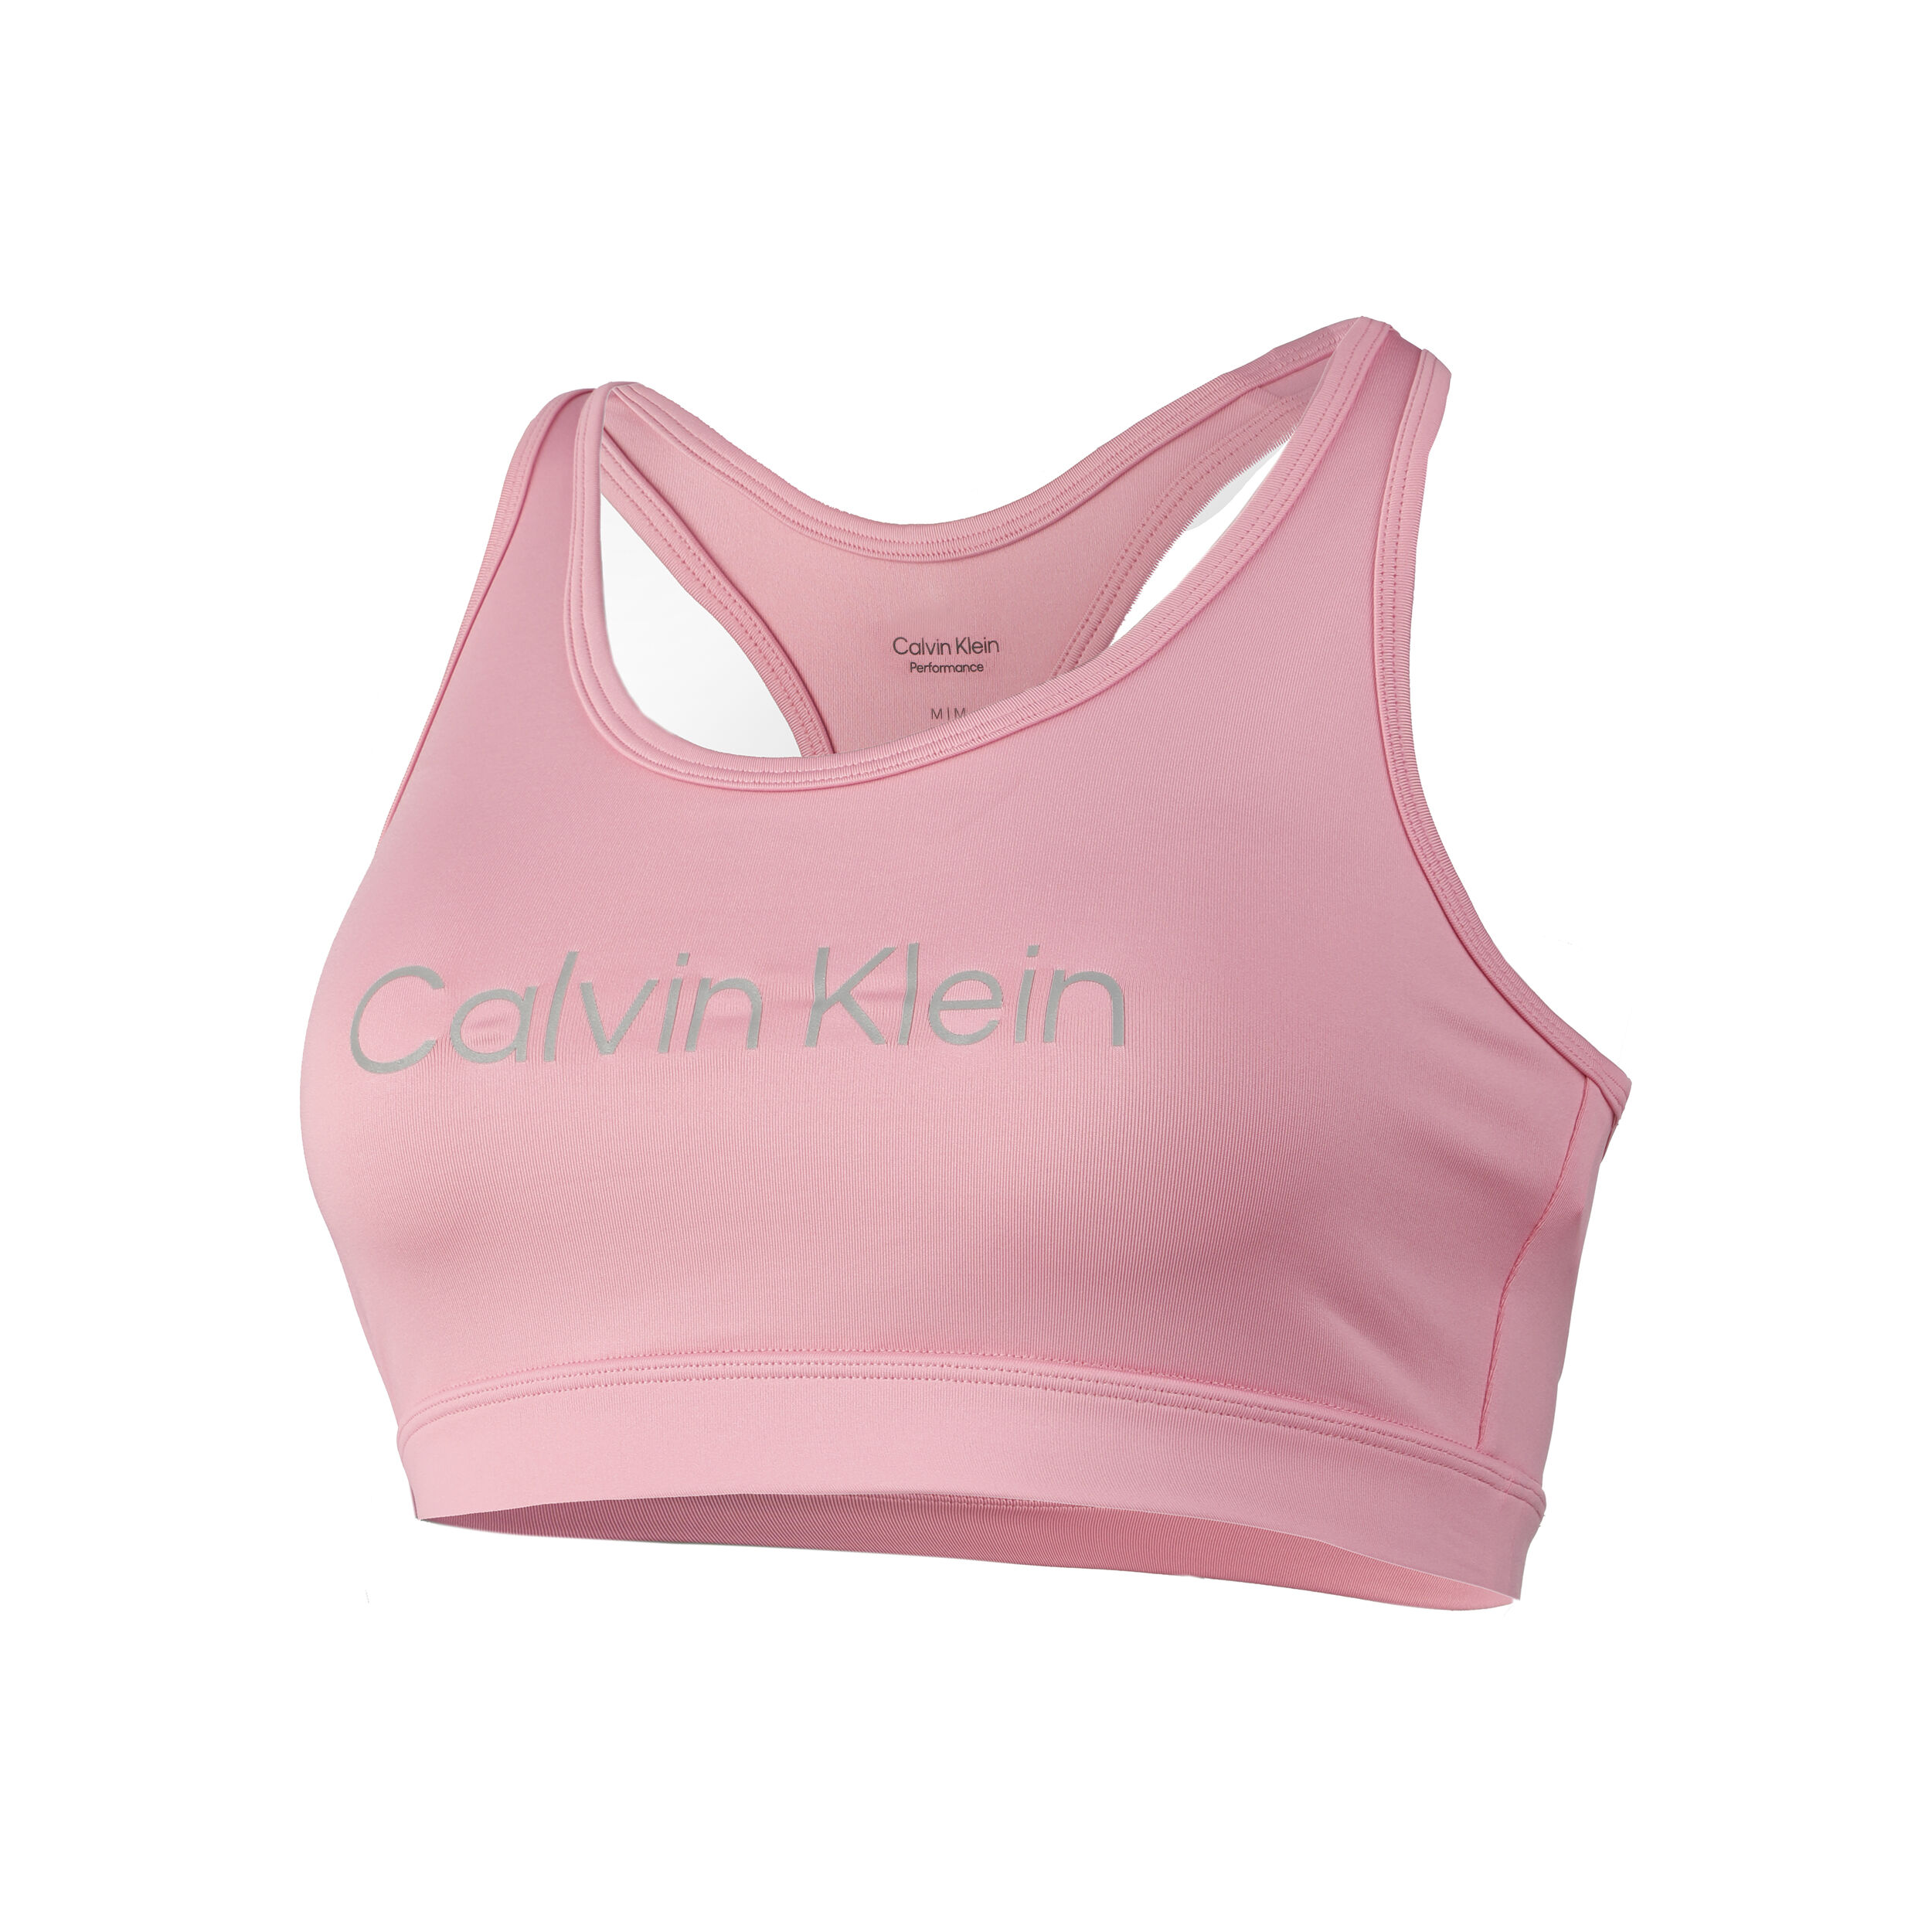 Femme Articles de sport et dentraînement Articles de sport et dentraînement Calvin Klein Sweat-shirt Calvin Klein en coloris Rose 